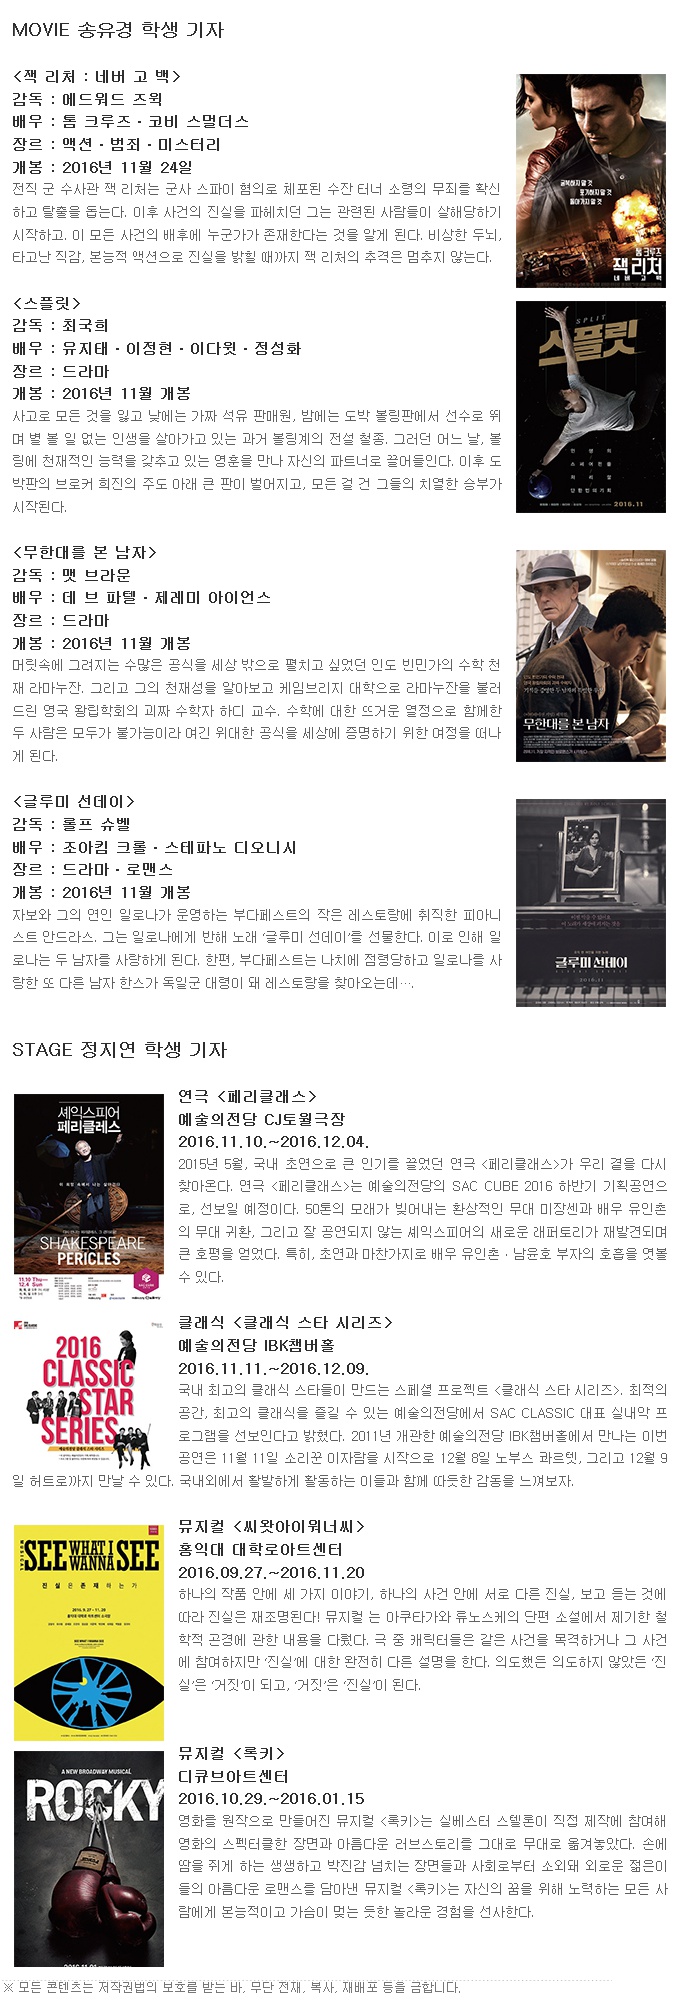 [정보공유] 11월 영화, 공연